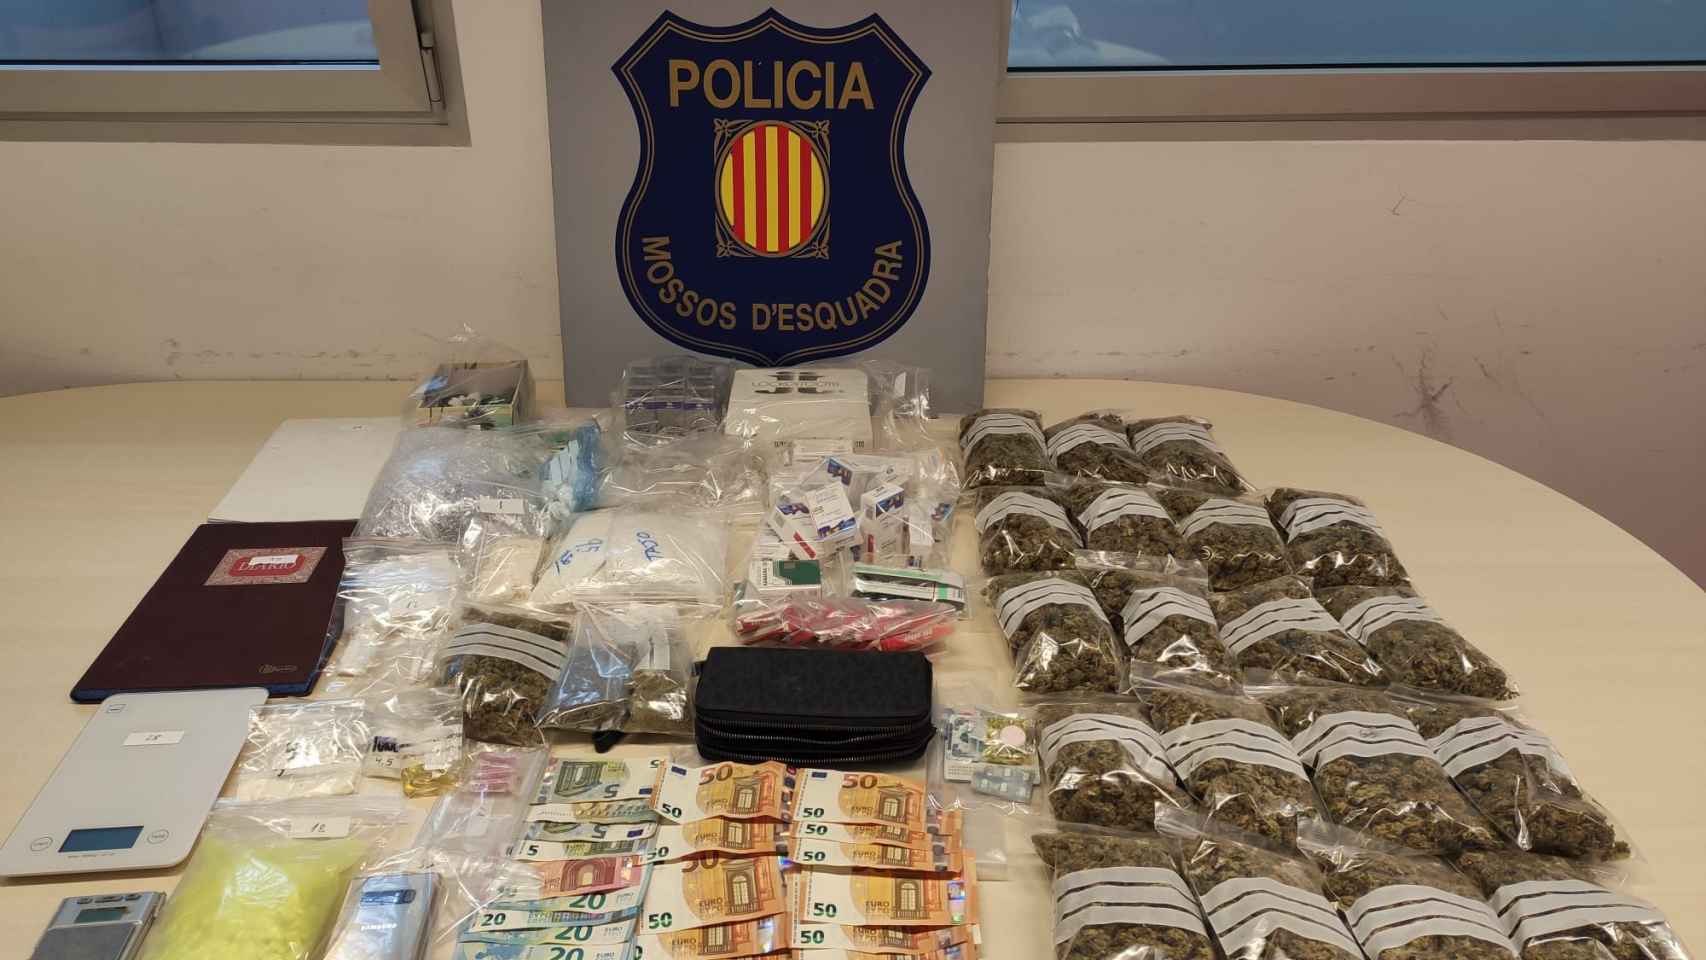 Droga, dinero en efectivo y otros objetos incautados por la policía / MOSSOS D'ESQUADRA